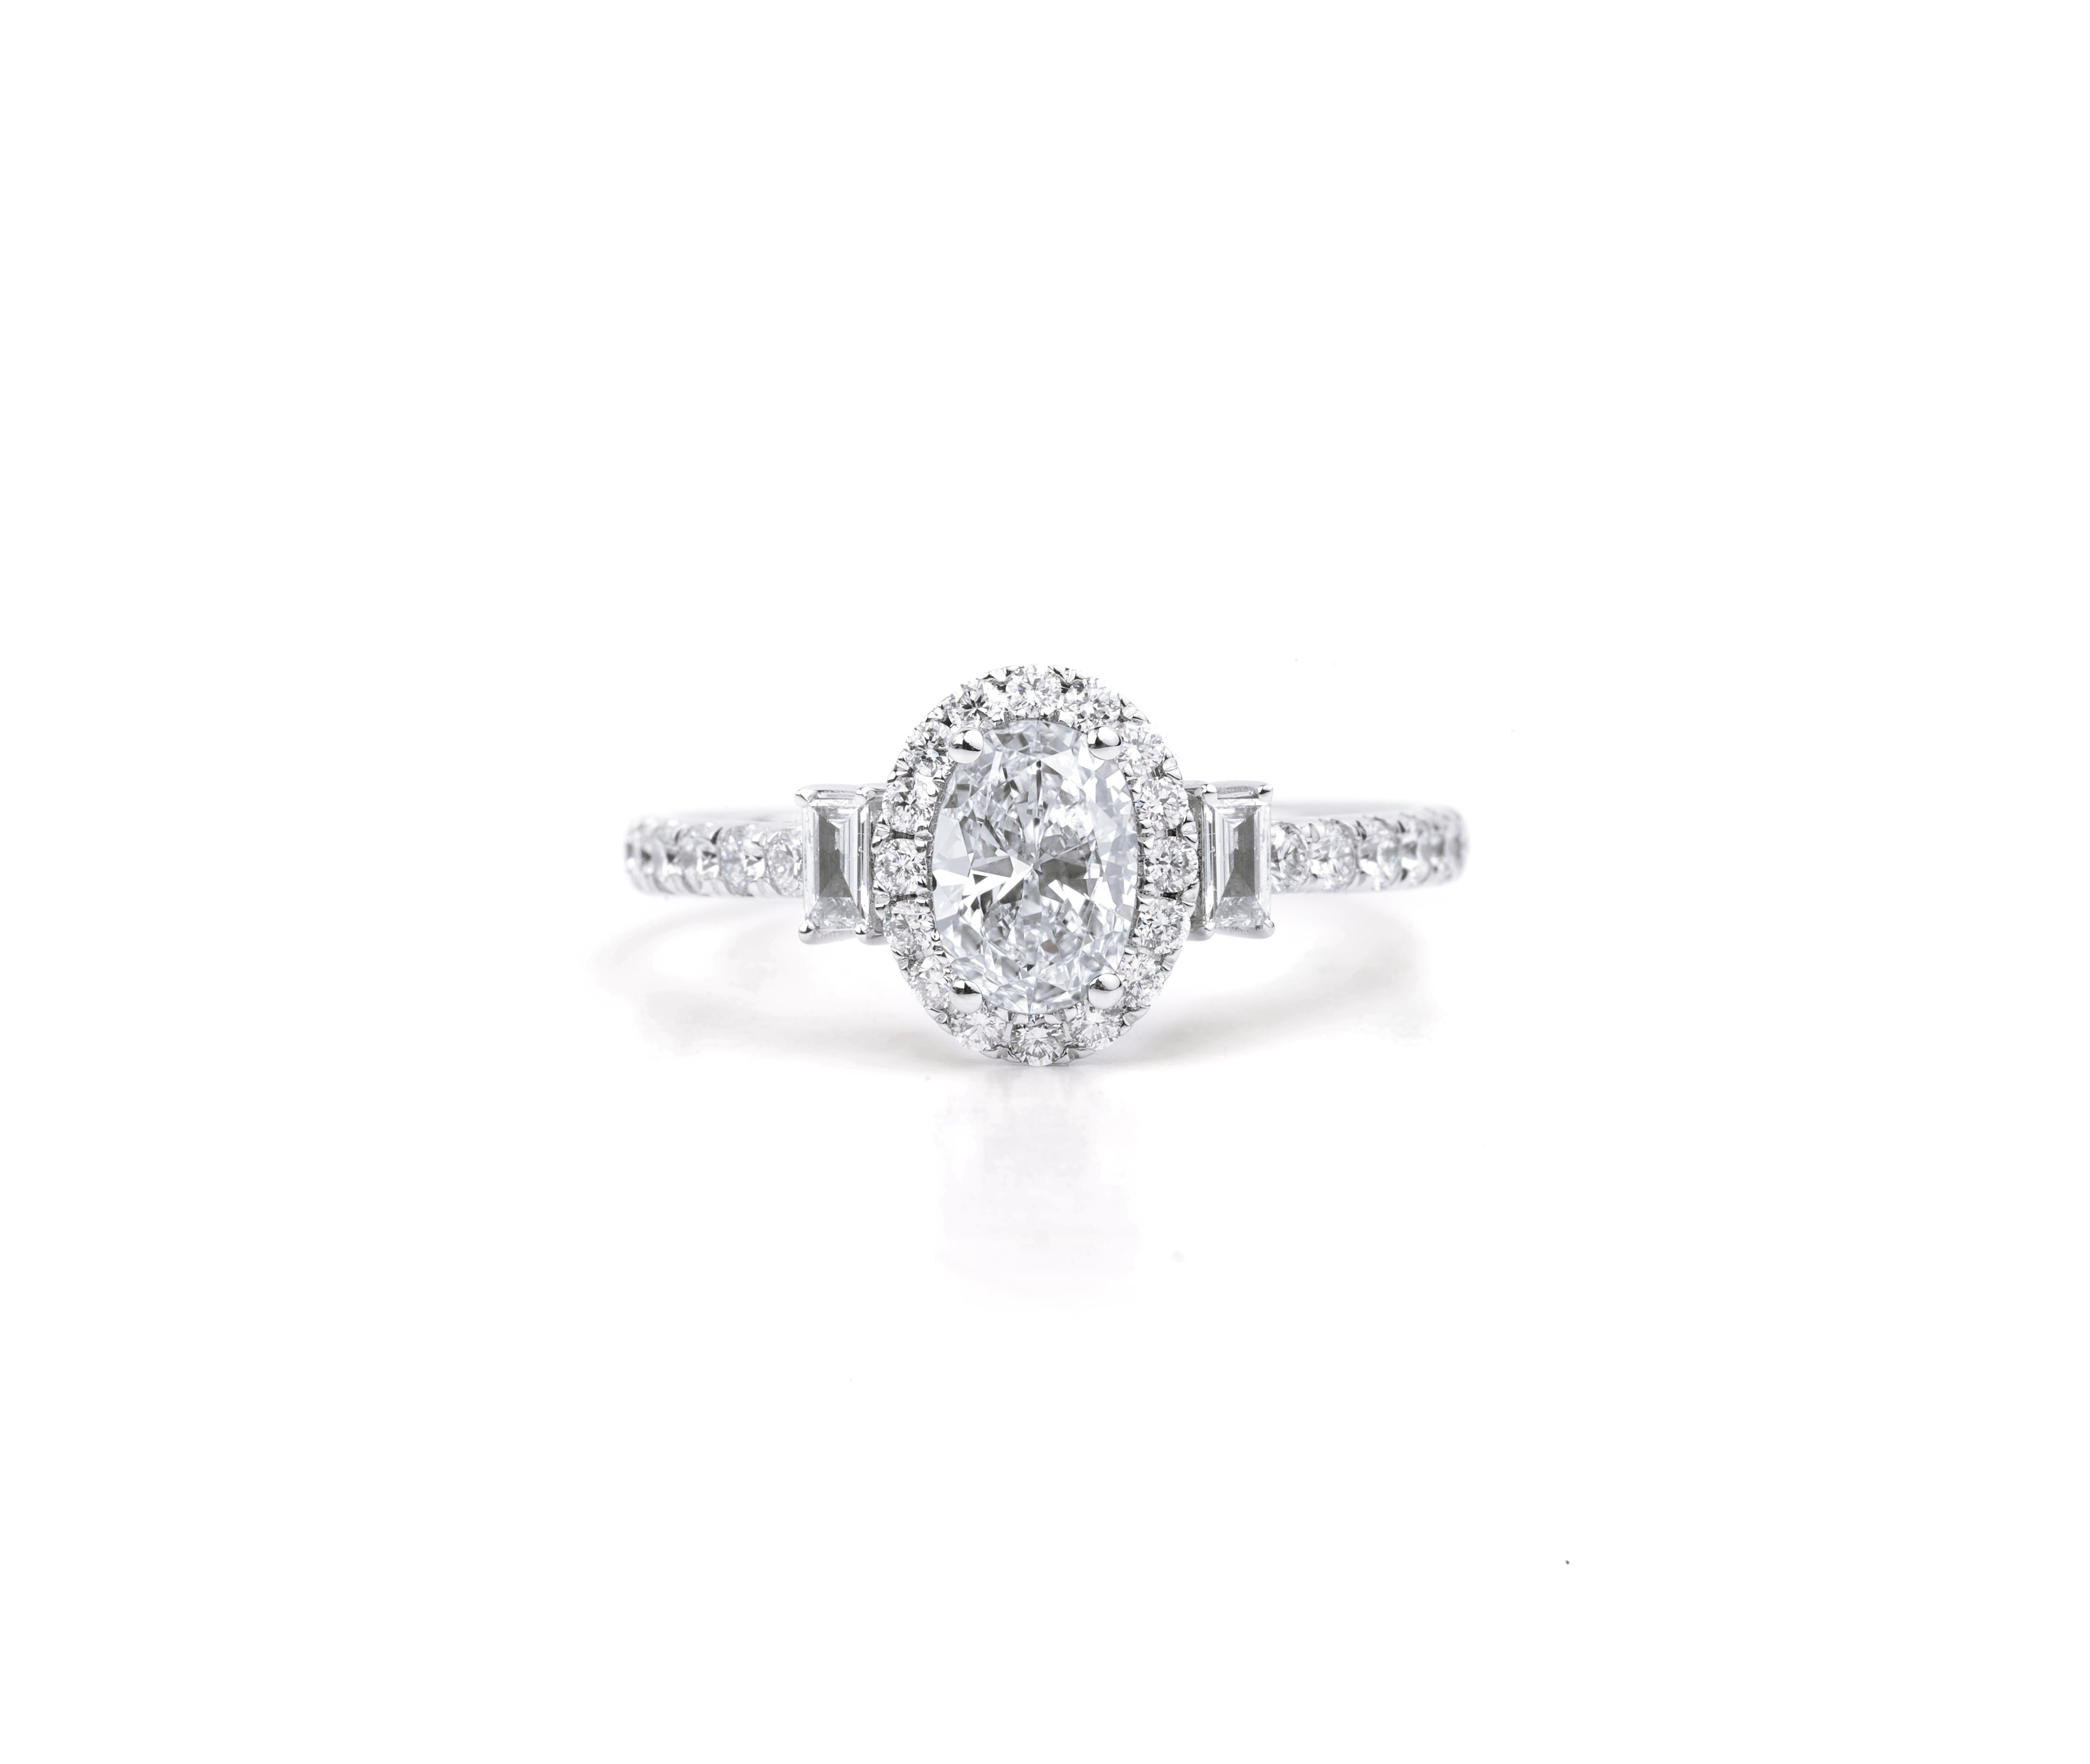 GIA Report Certified 1 carat G VS Oval Cut Engagement Diamond Cocktail Ring With Baguette Diamonds

Disponible en or blanc 18k.

Le même design peut être réalisé avec d'autres pierres précieuses sur demande.

Détails du produit :

- Or massif

-